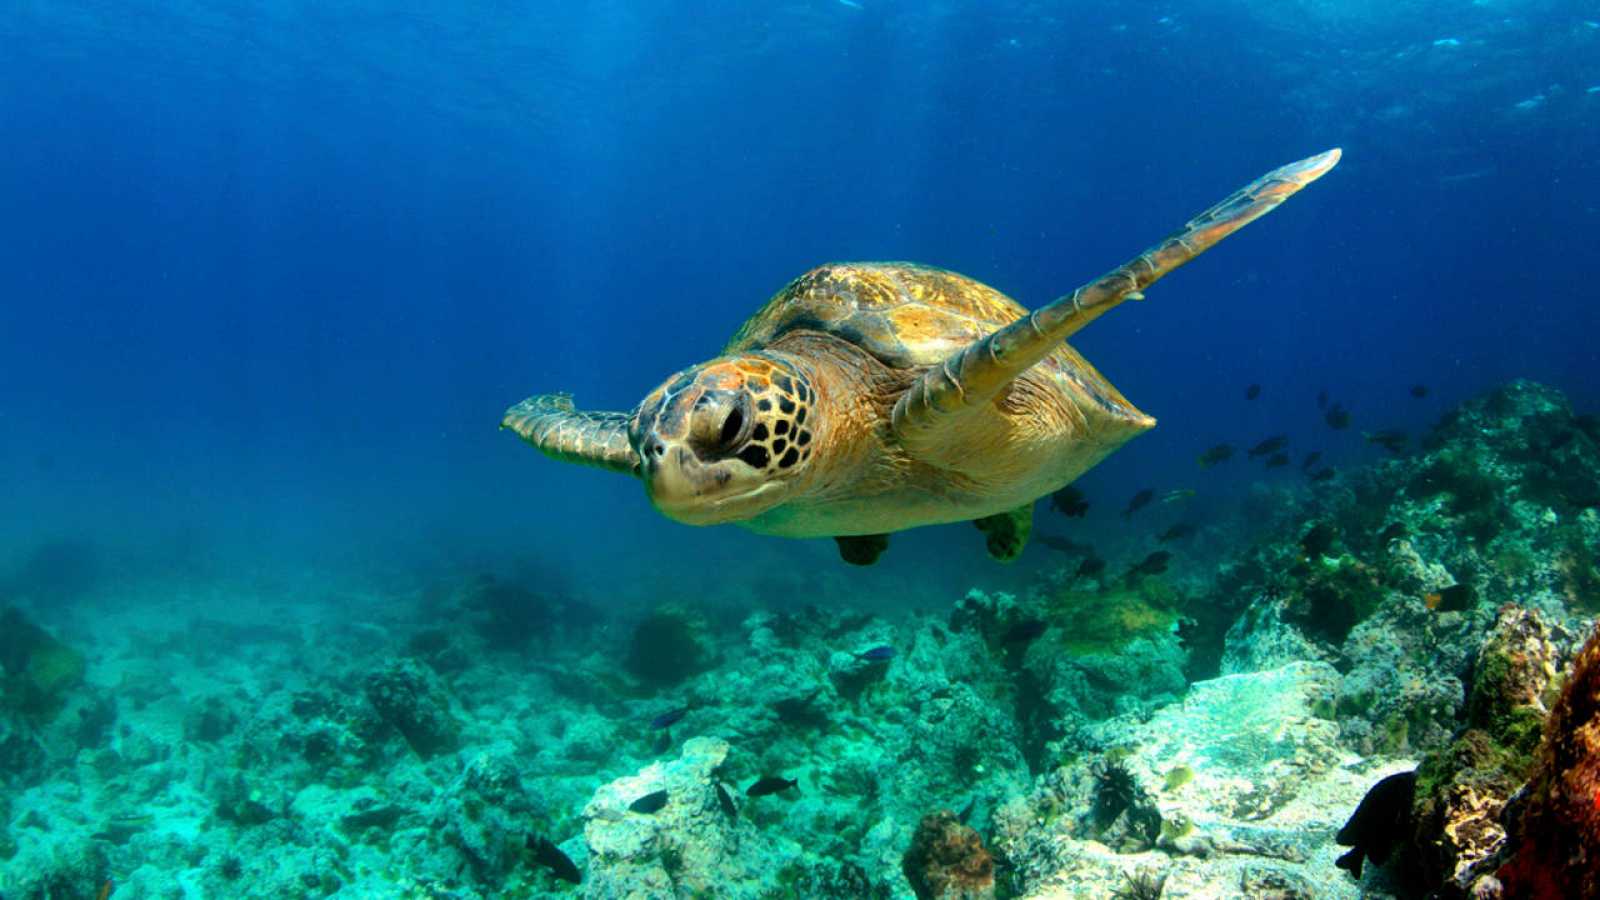 Florida actualizó su conteo de nidos de tortugas marinas en 2018